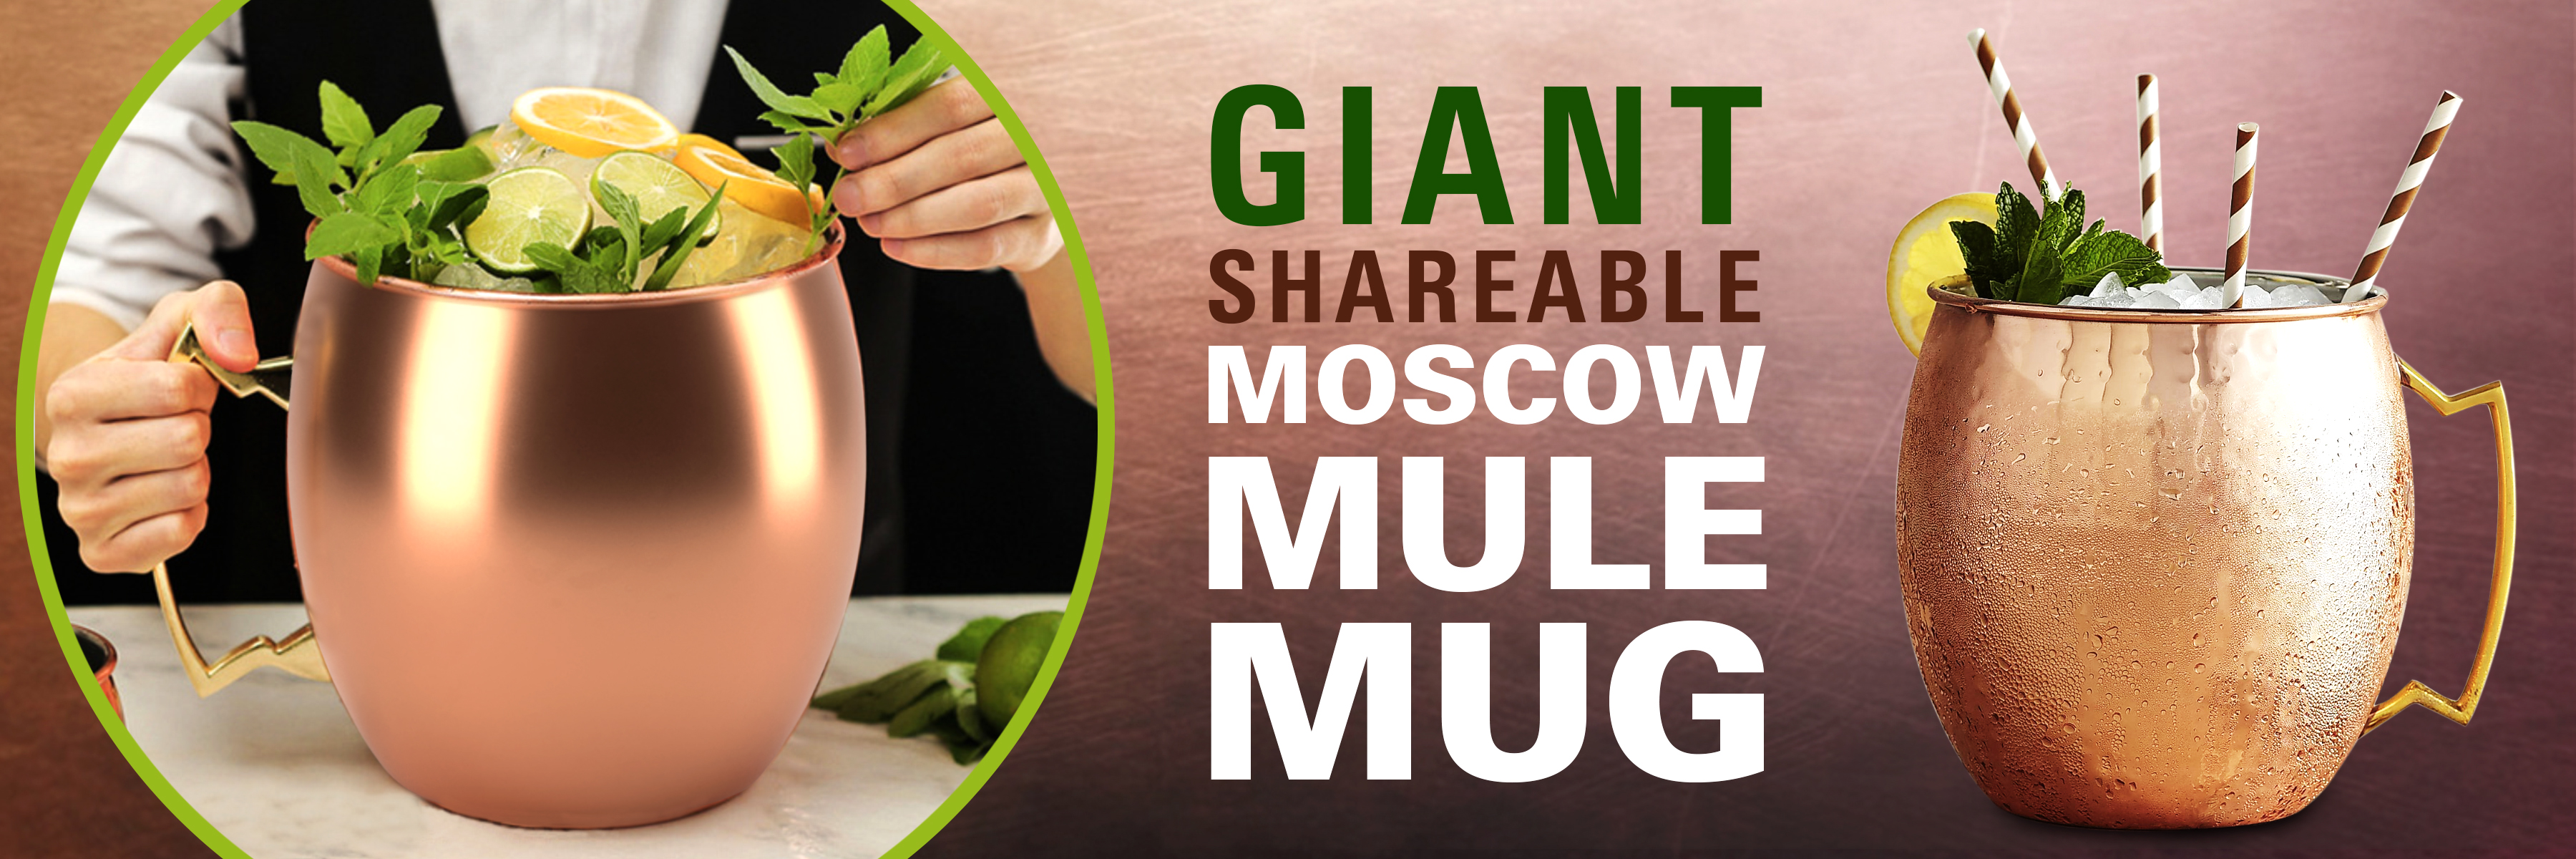 giant shareable moscow mule mug